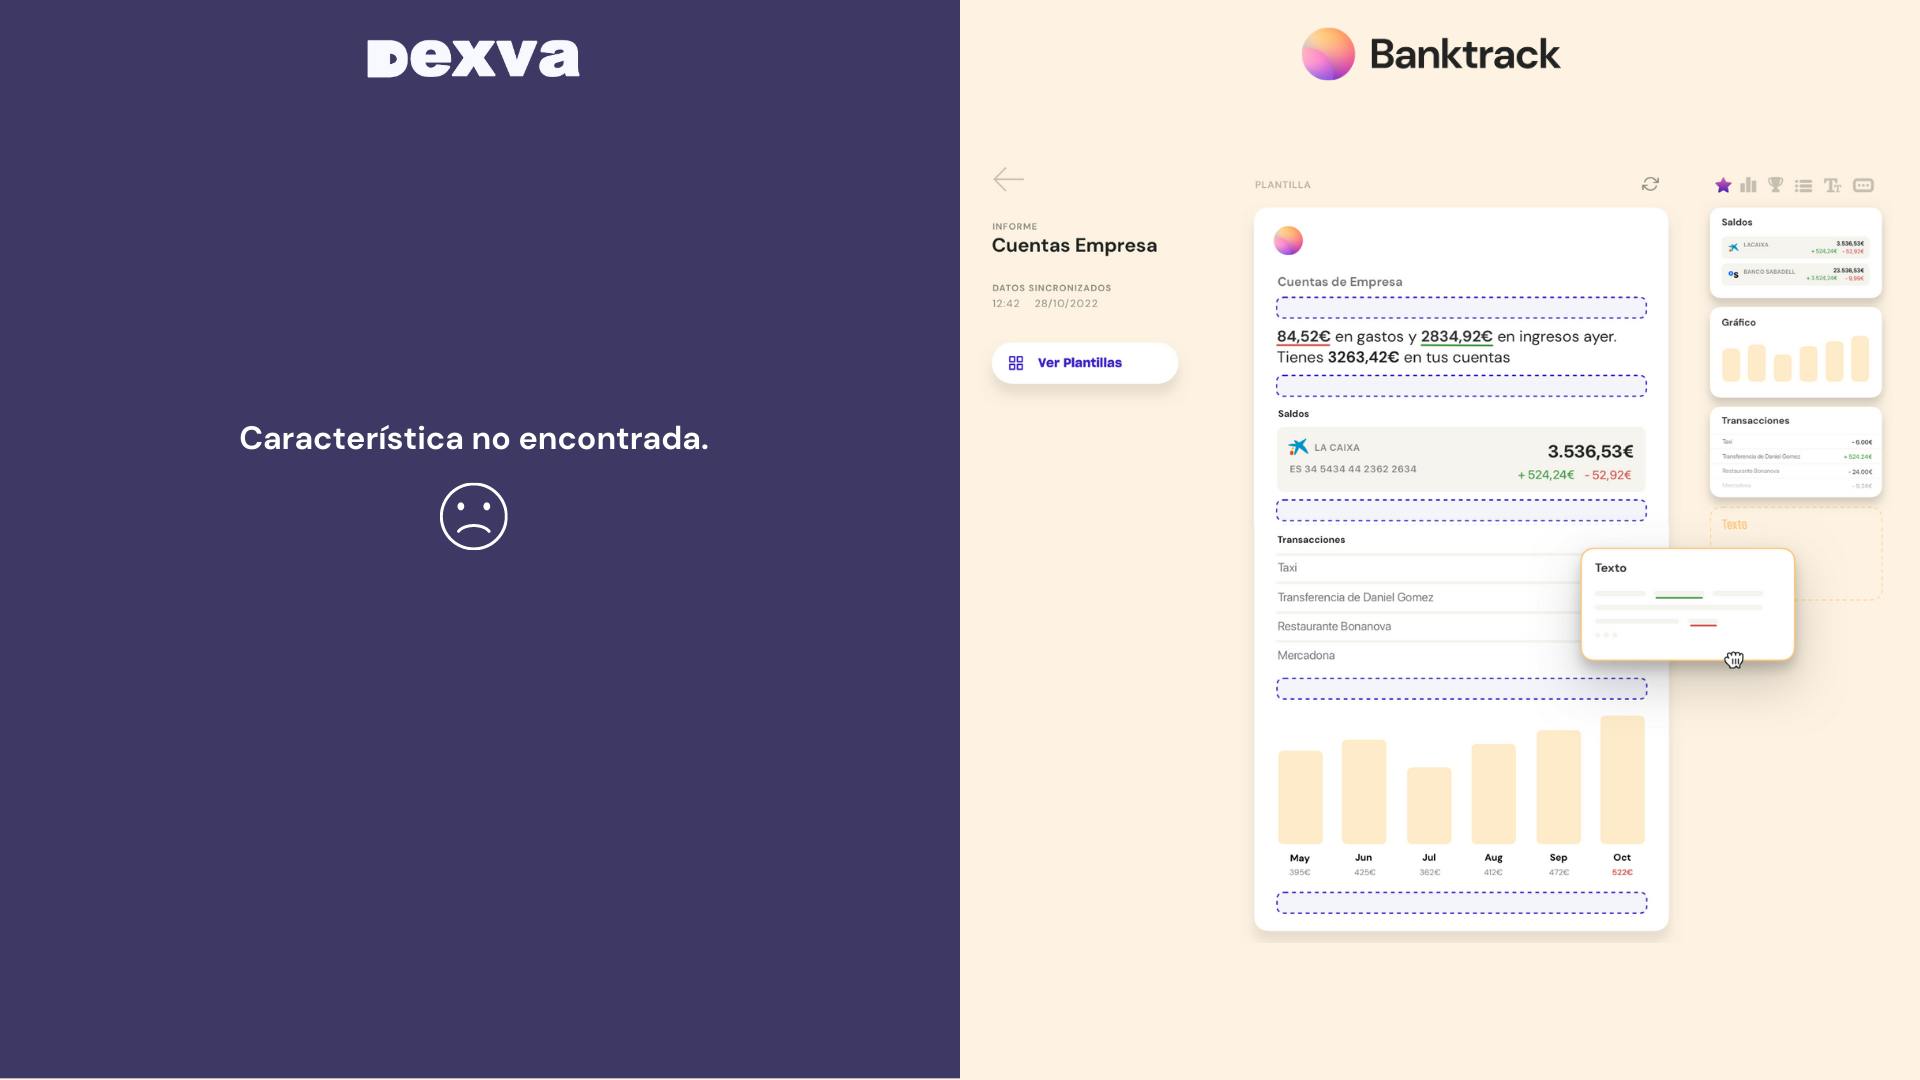 Capturas de pantalla que corresponden a Banktrack, mientras que Dexva no dispone de estas características